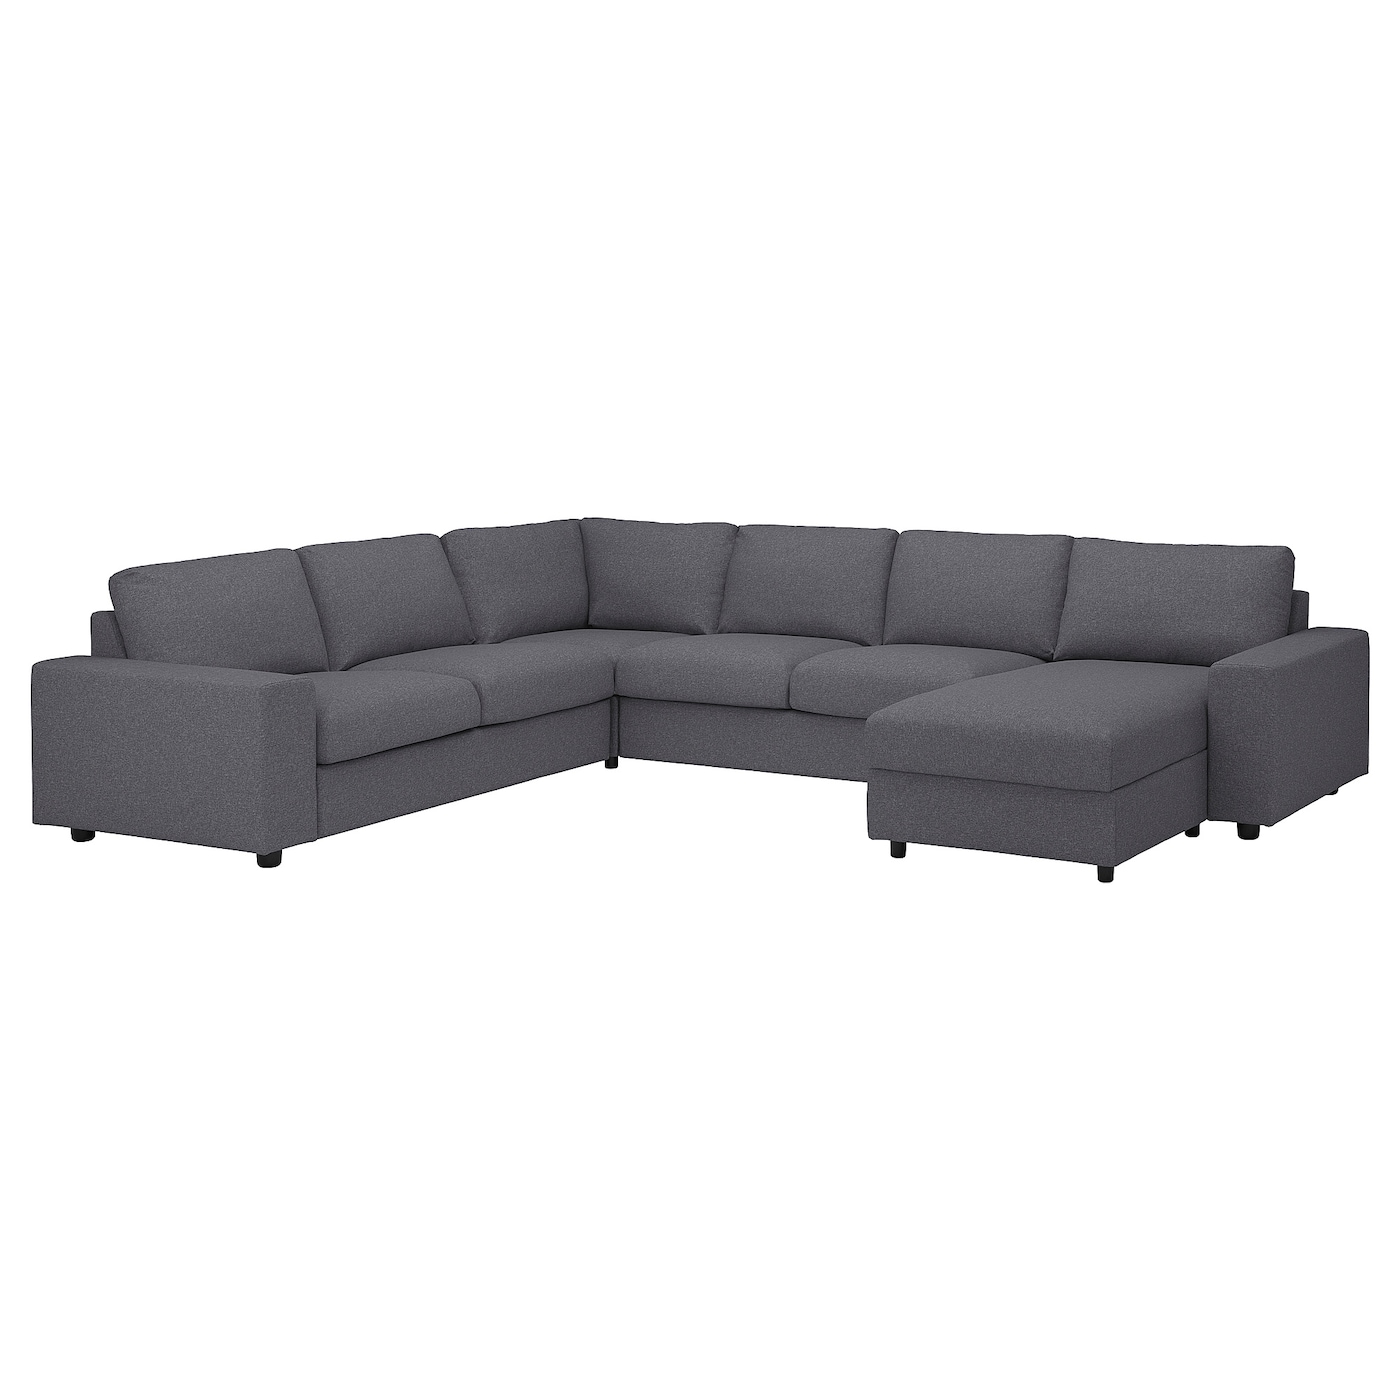 ВИМЛЕ Диван угловой, 5-местный. диван+диван, с широкими подлокотниками/Гуннаред средний серый VIMLE IKEA